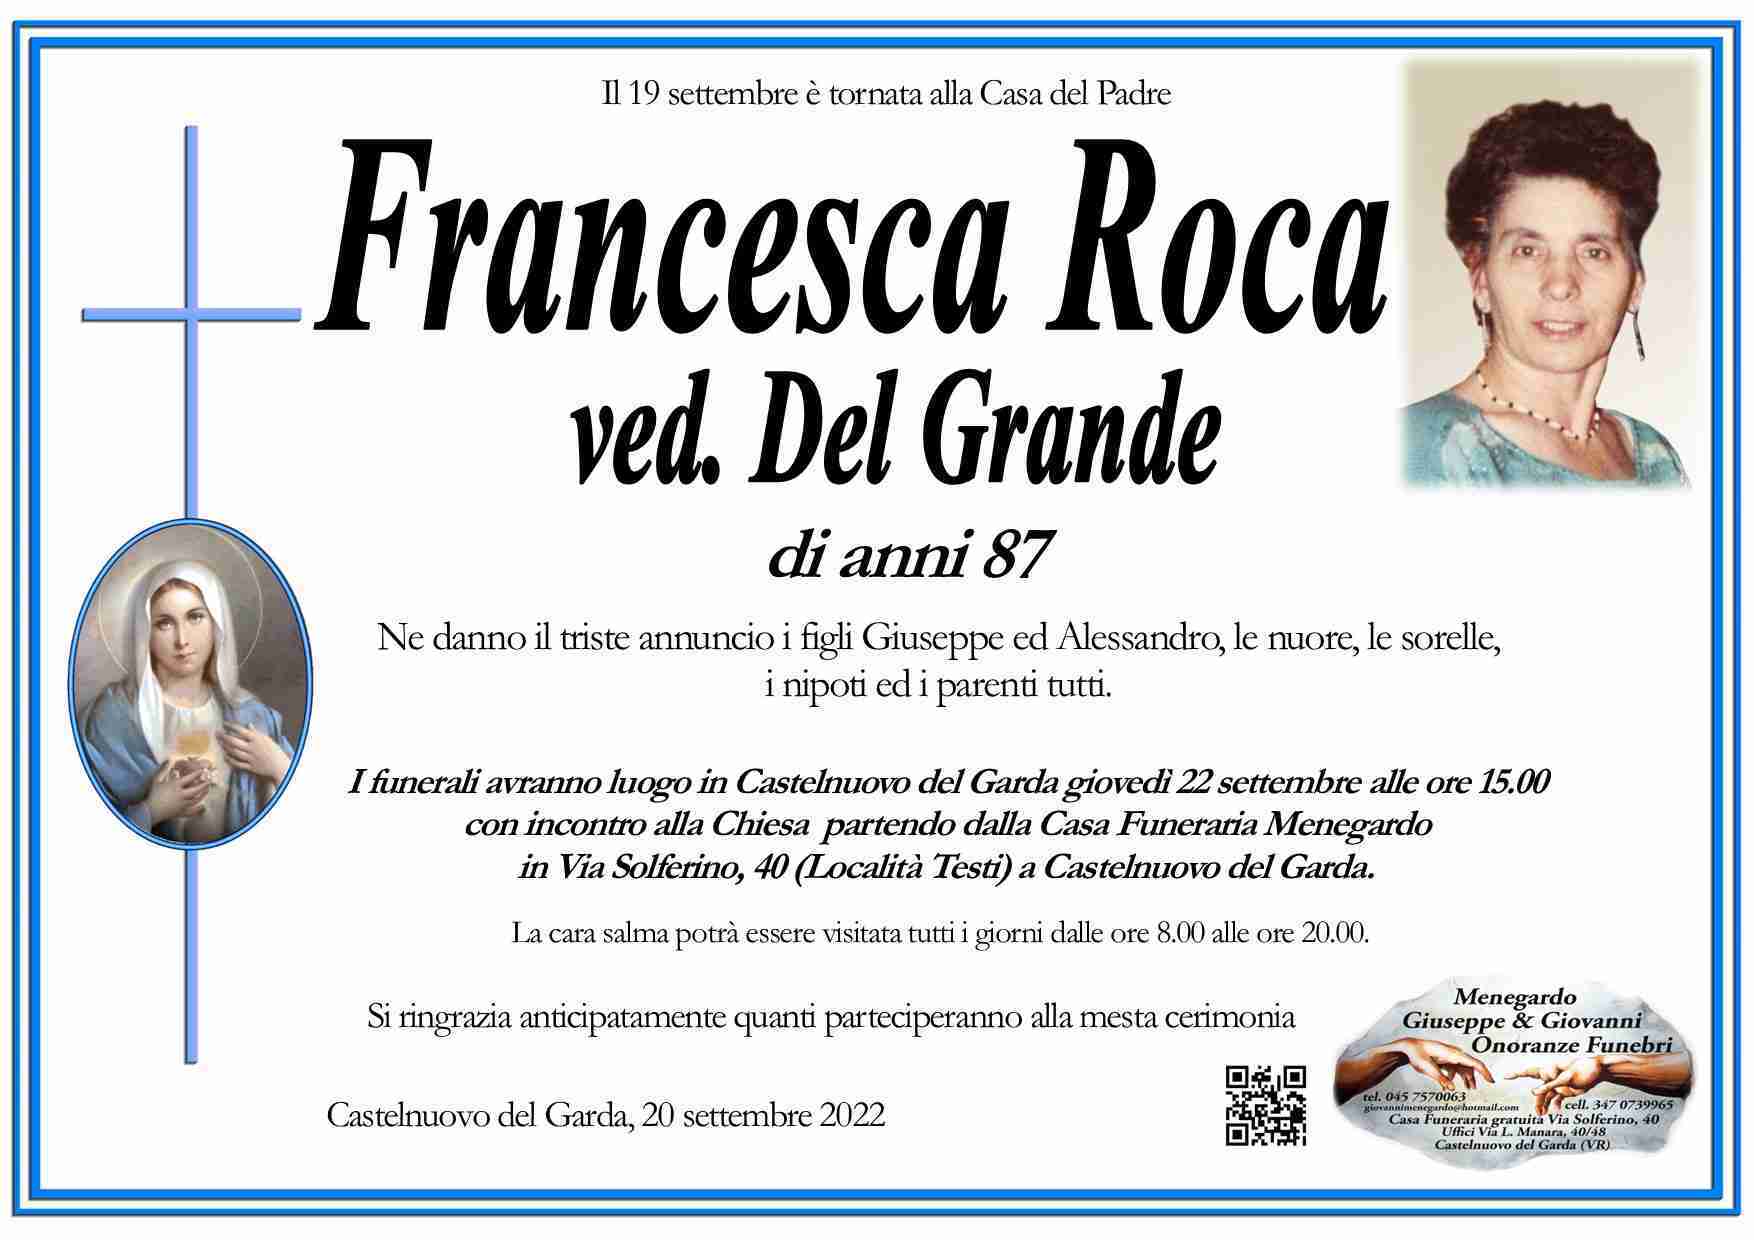 Francesca Roca